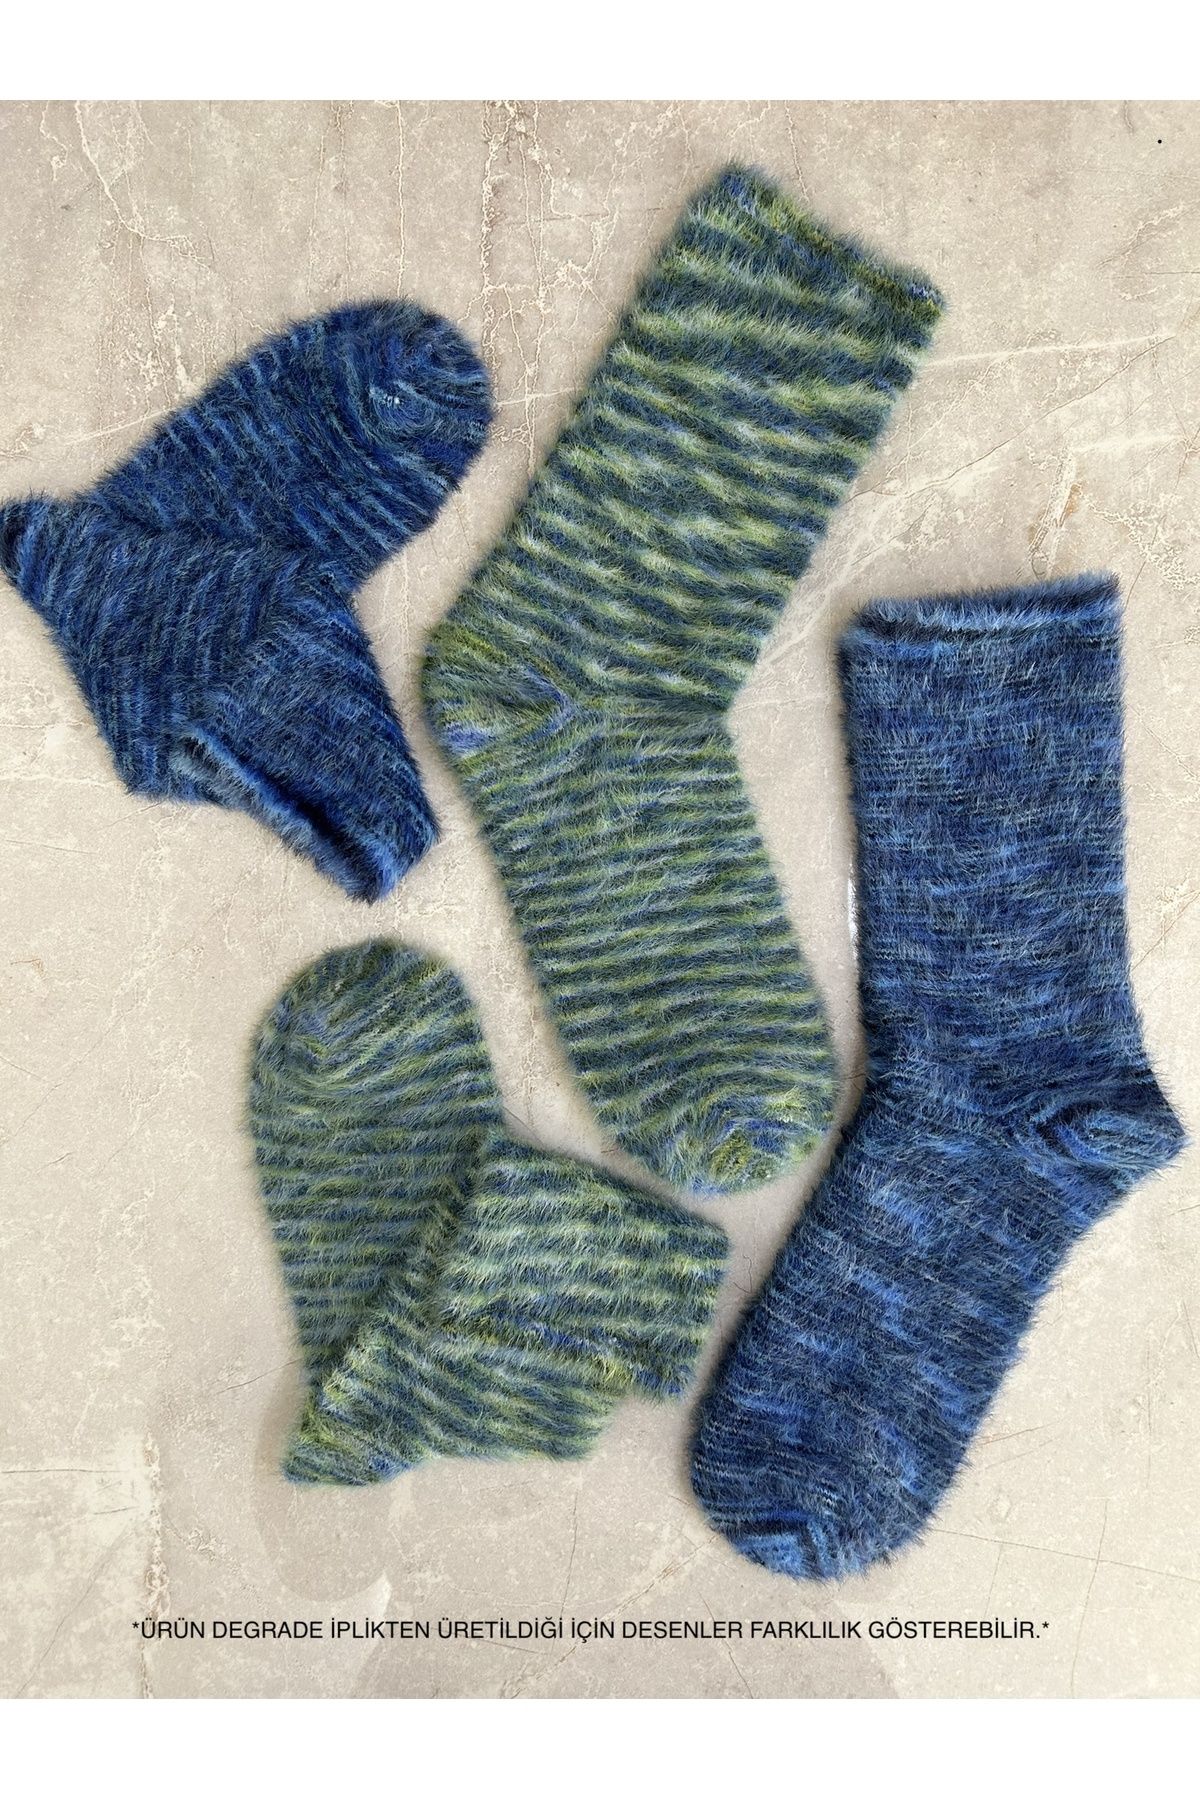 Sky Socks 2'li Peluş Kışlık Yumuşak Yünlü Degrade Kokulu Mavi-yeşil Uyku Çorabı